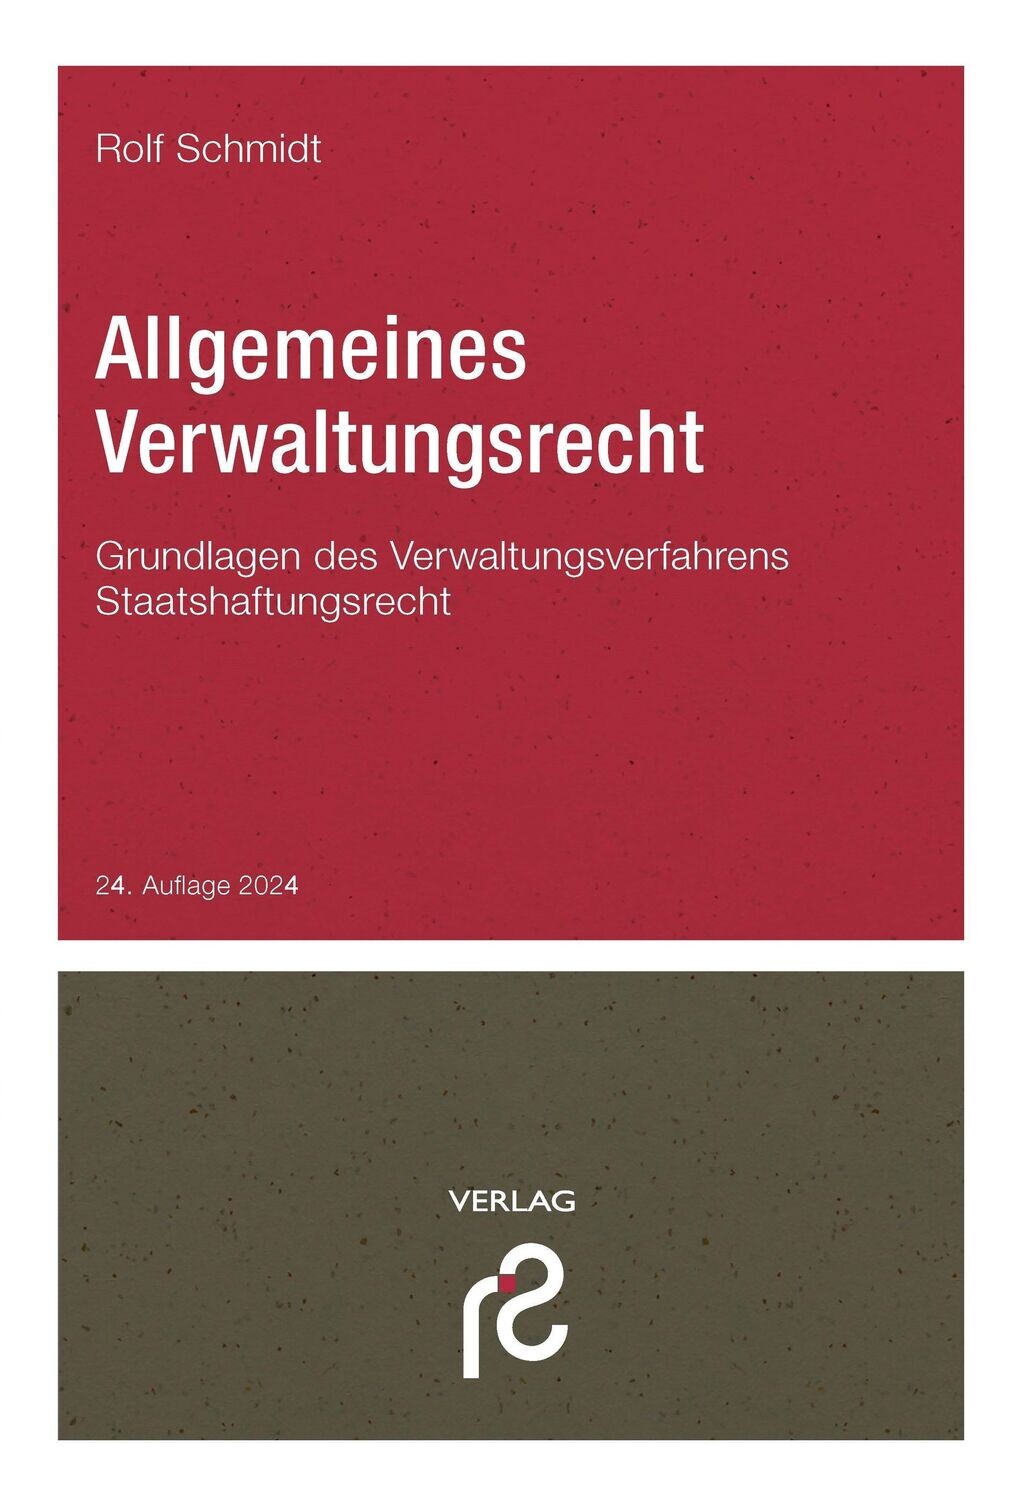 Allgemeines Verwaltungsrecht, 24. Auflage 2024